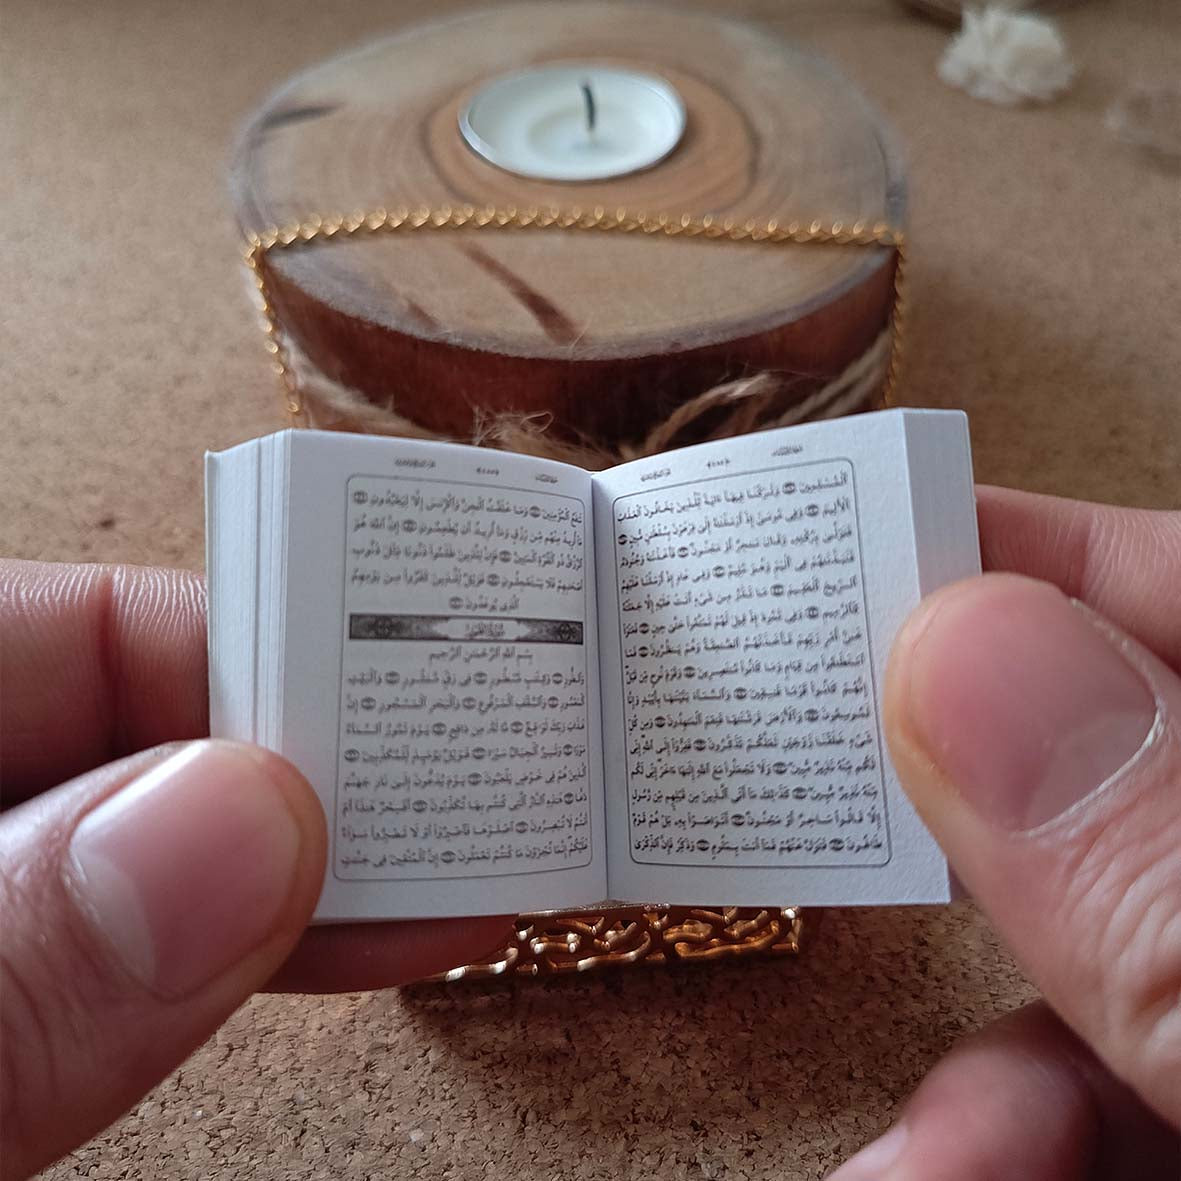 Mini Quran